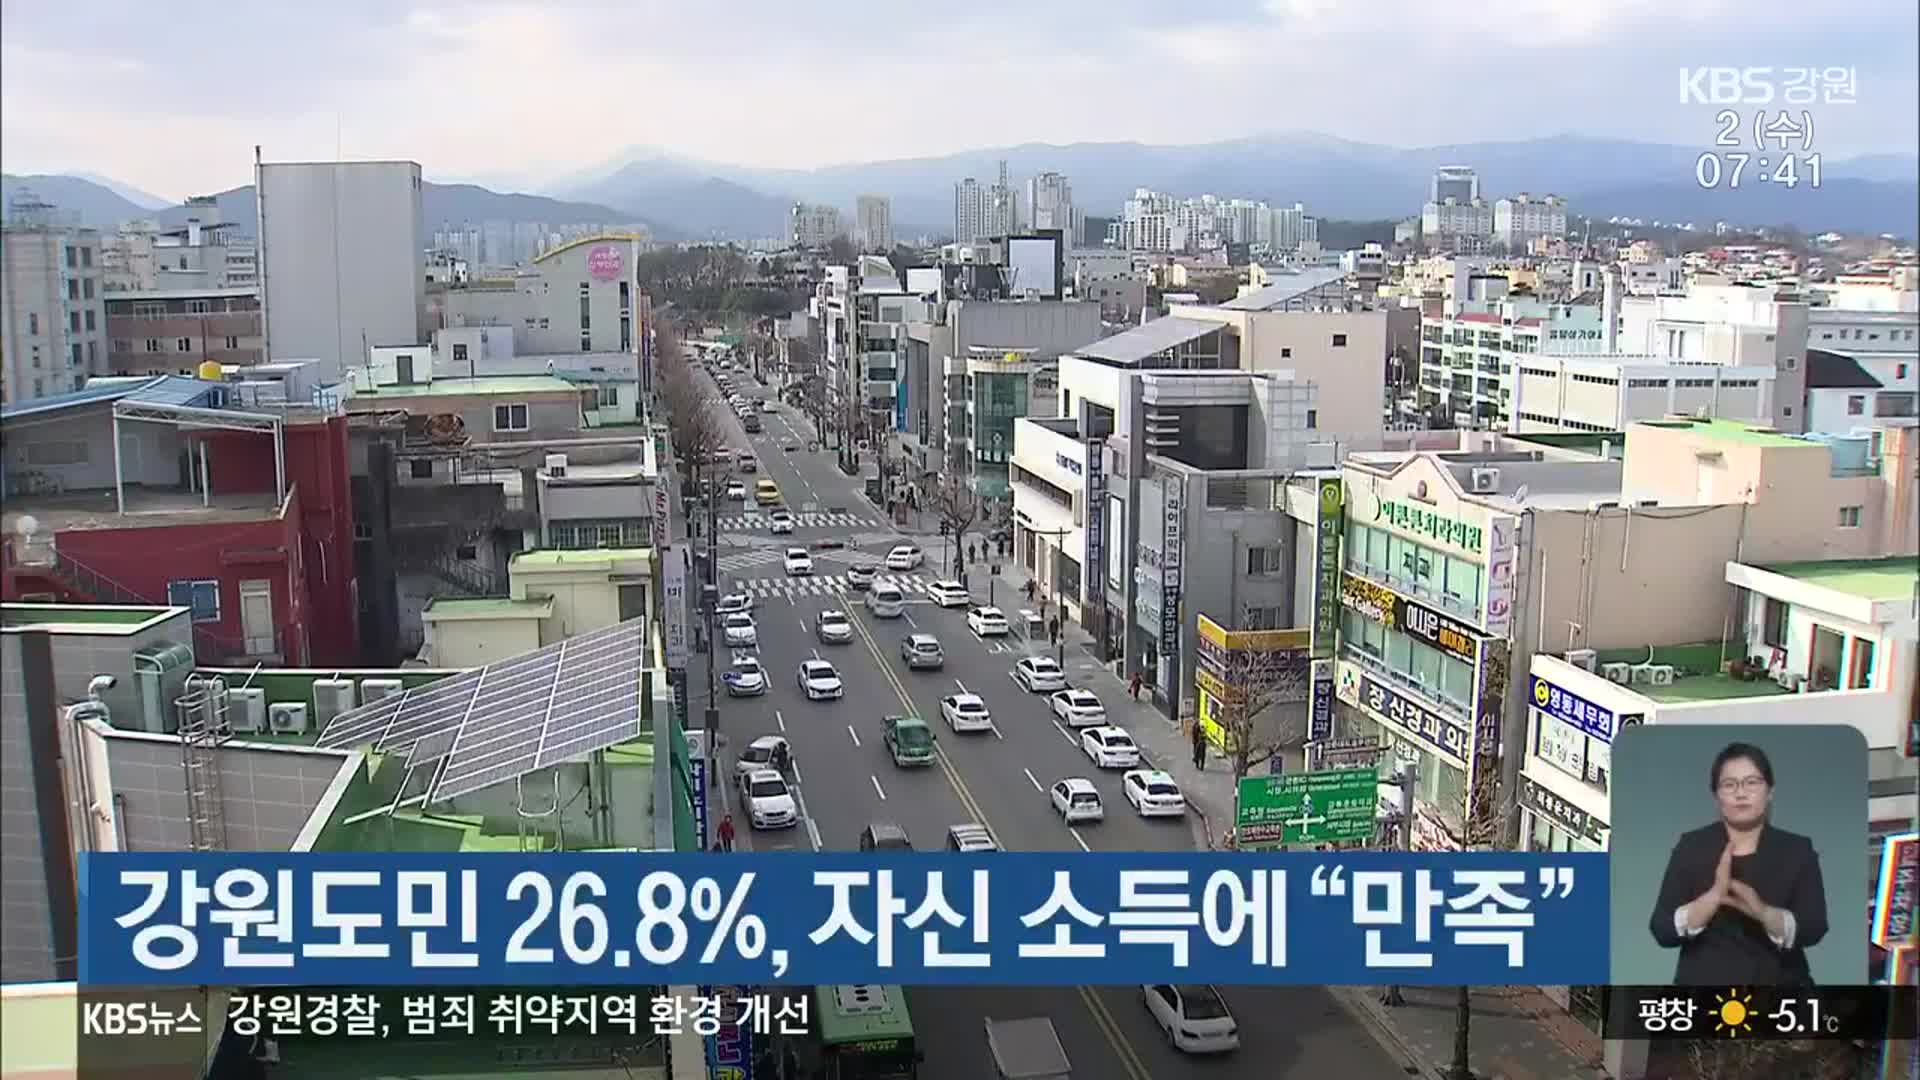 강원도민 26.8%, 자신 소득에 “만족”